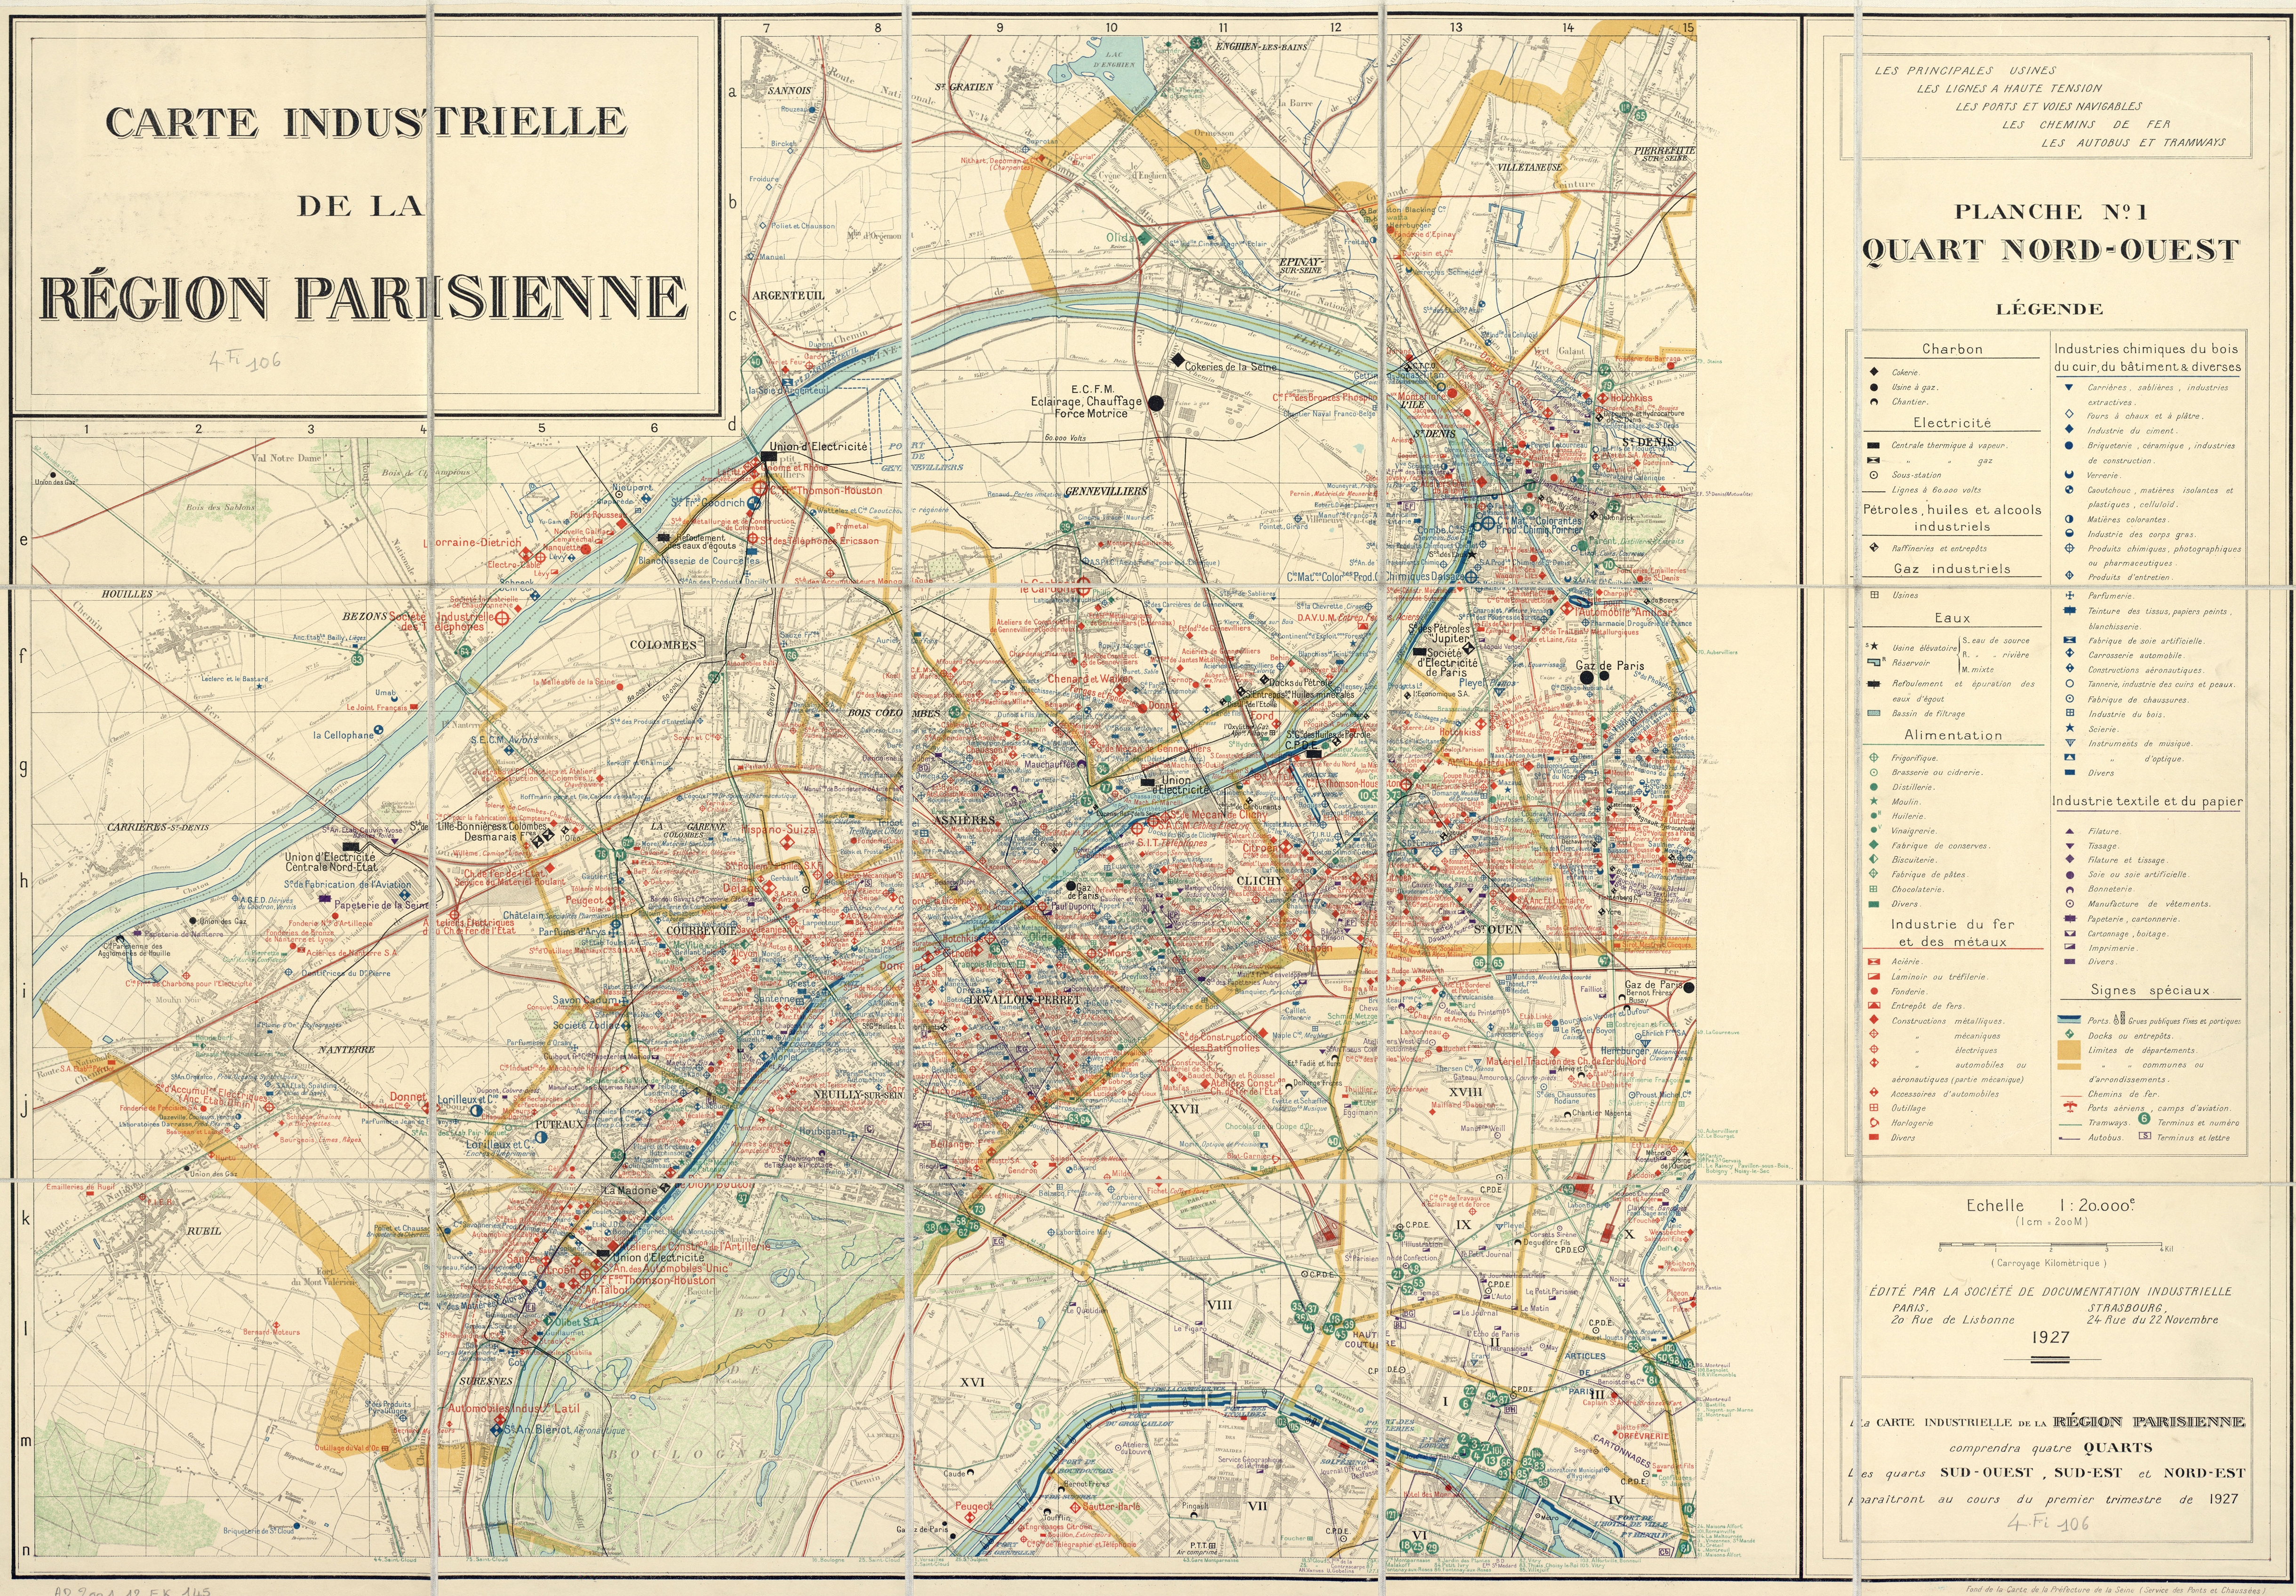 Carte Industrielle de la Seine en 1927.